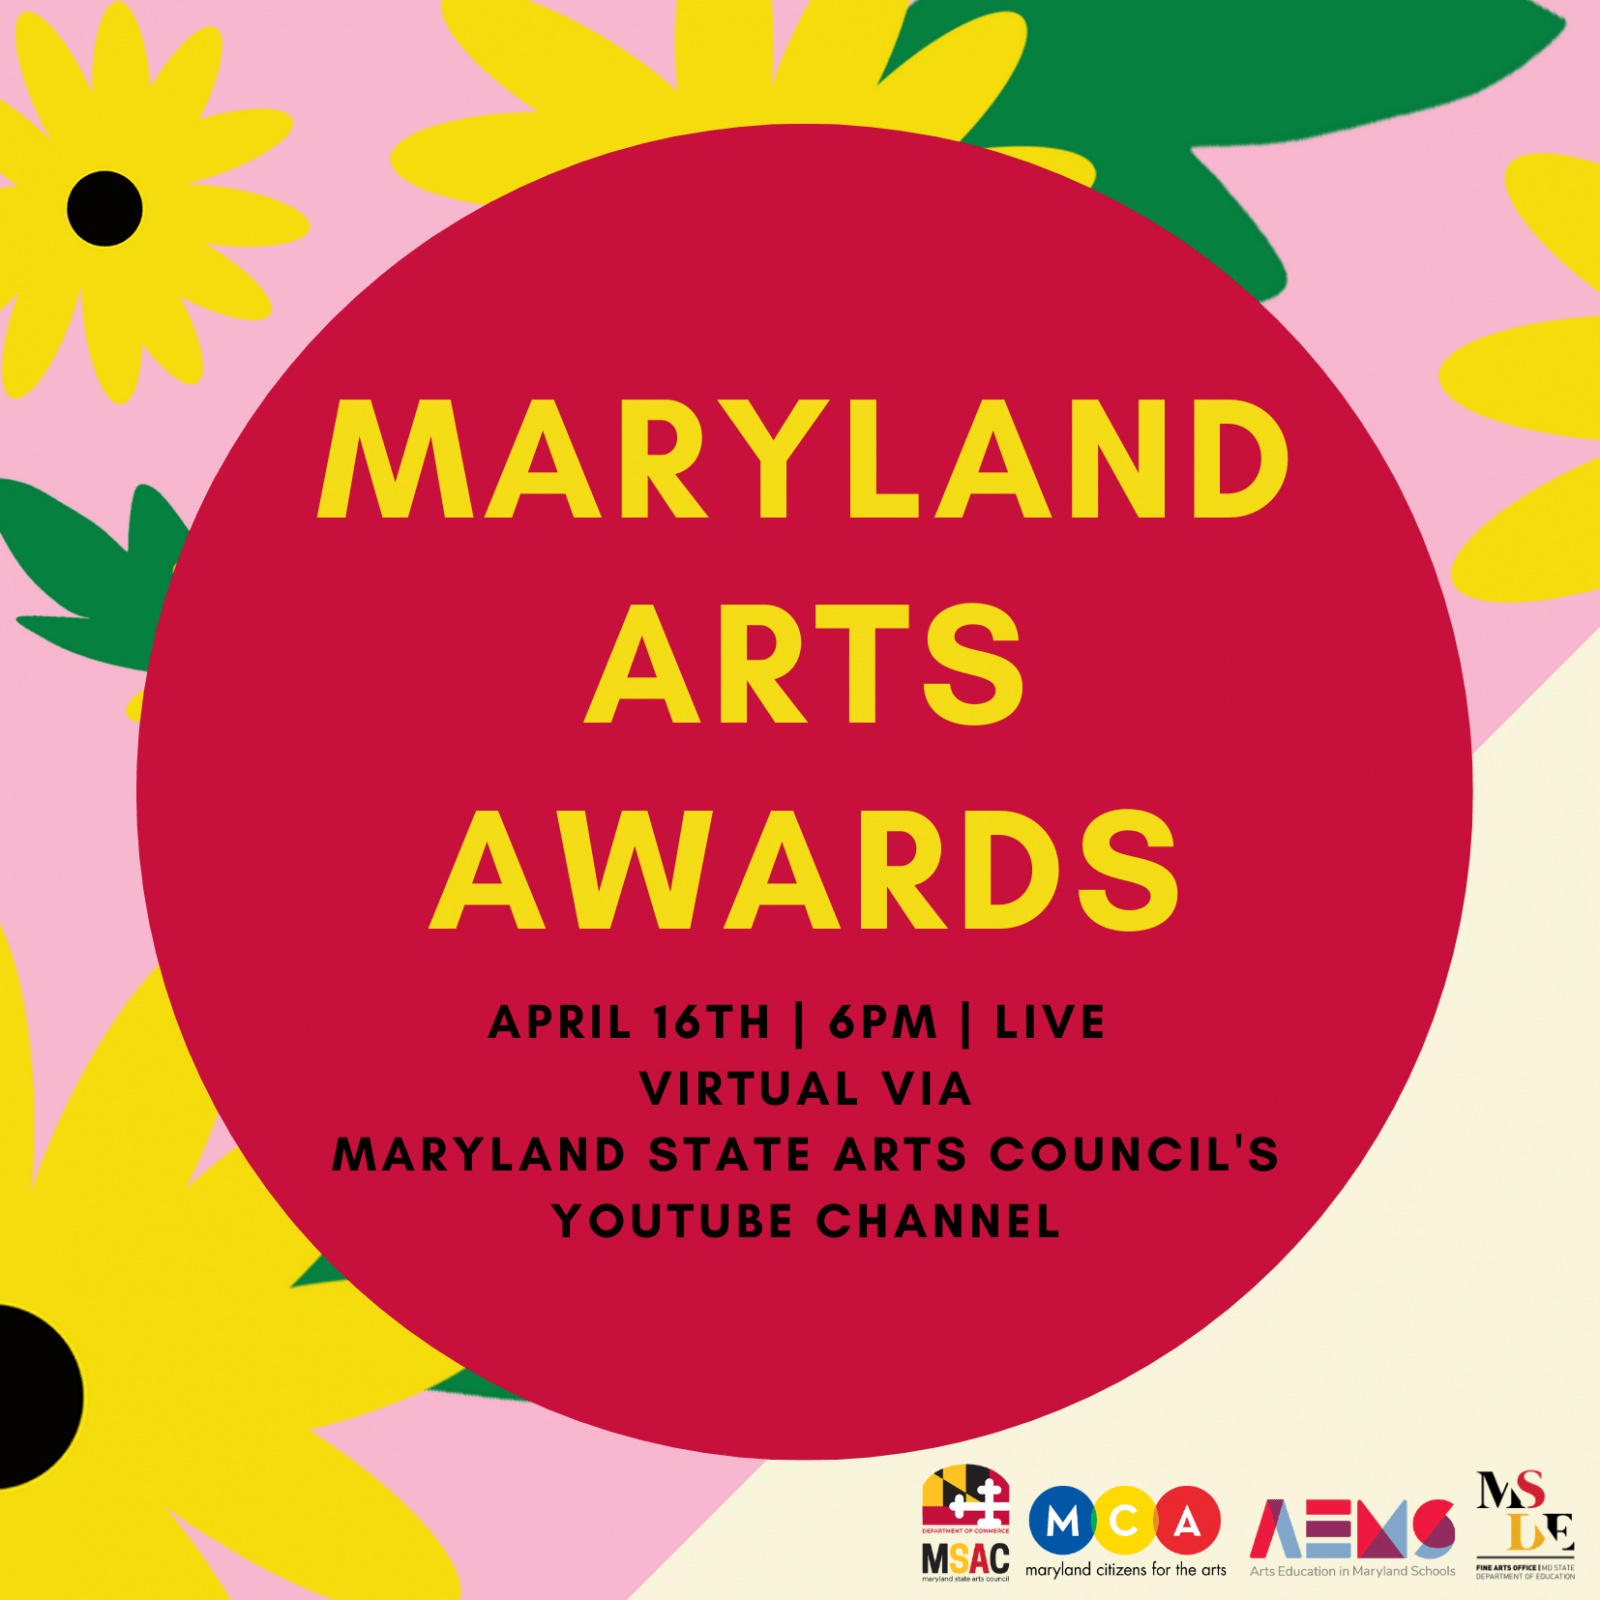 Maryland Arts Awards invitation